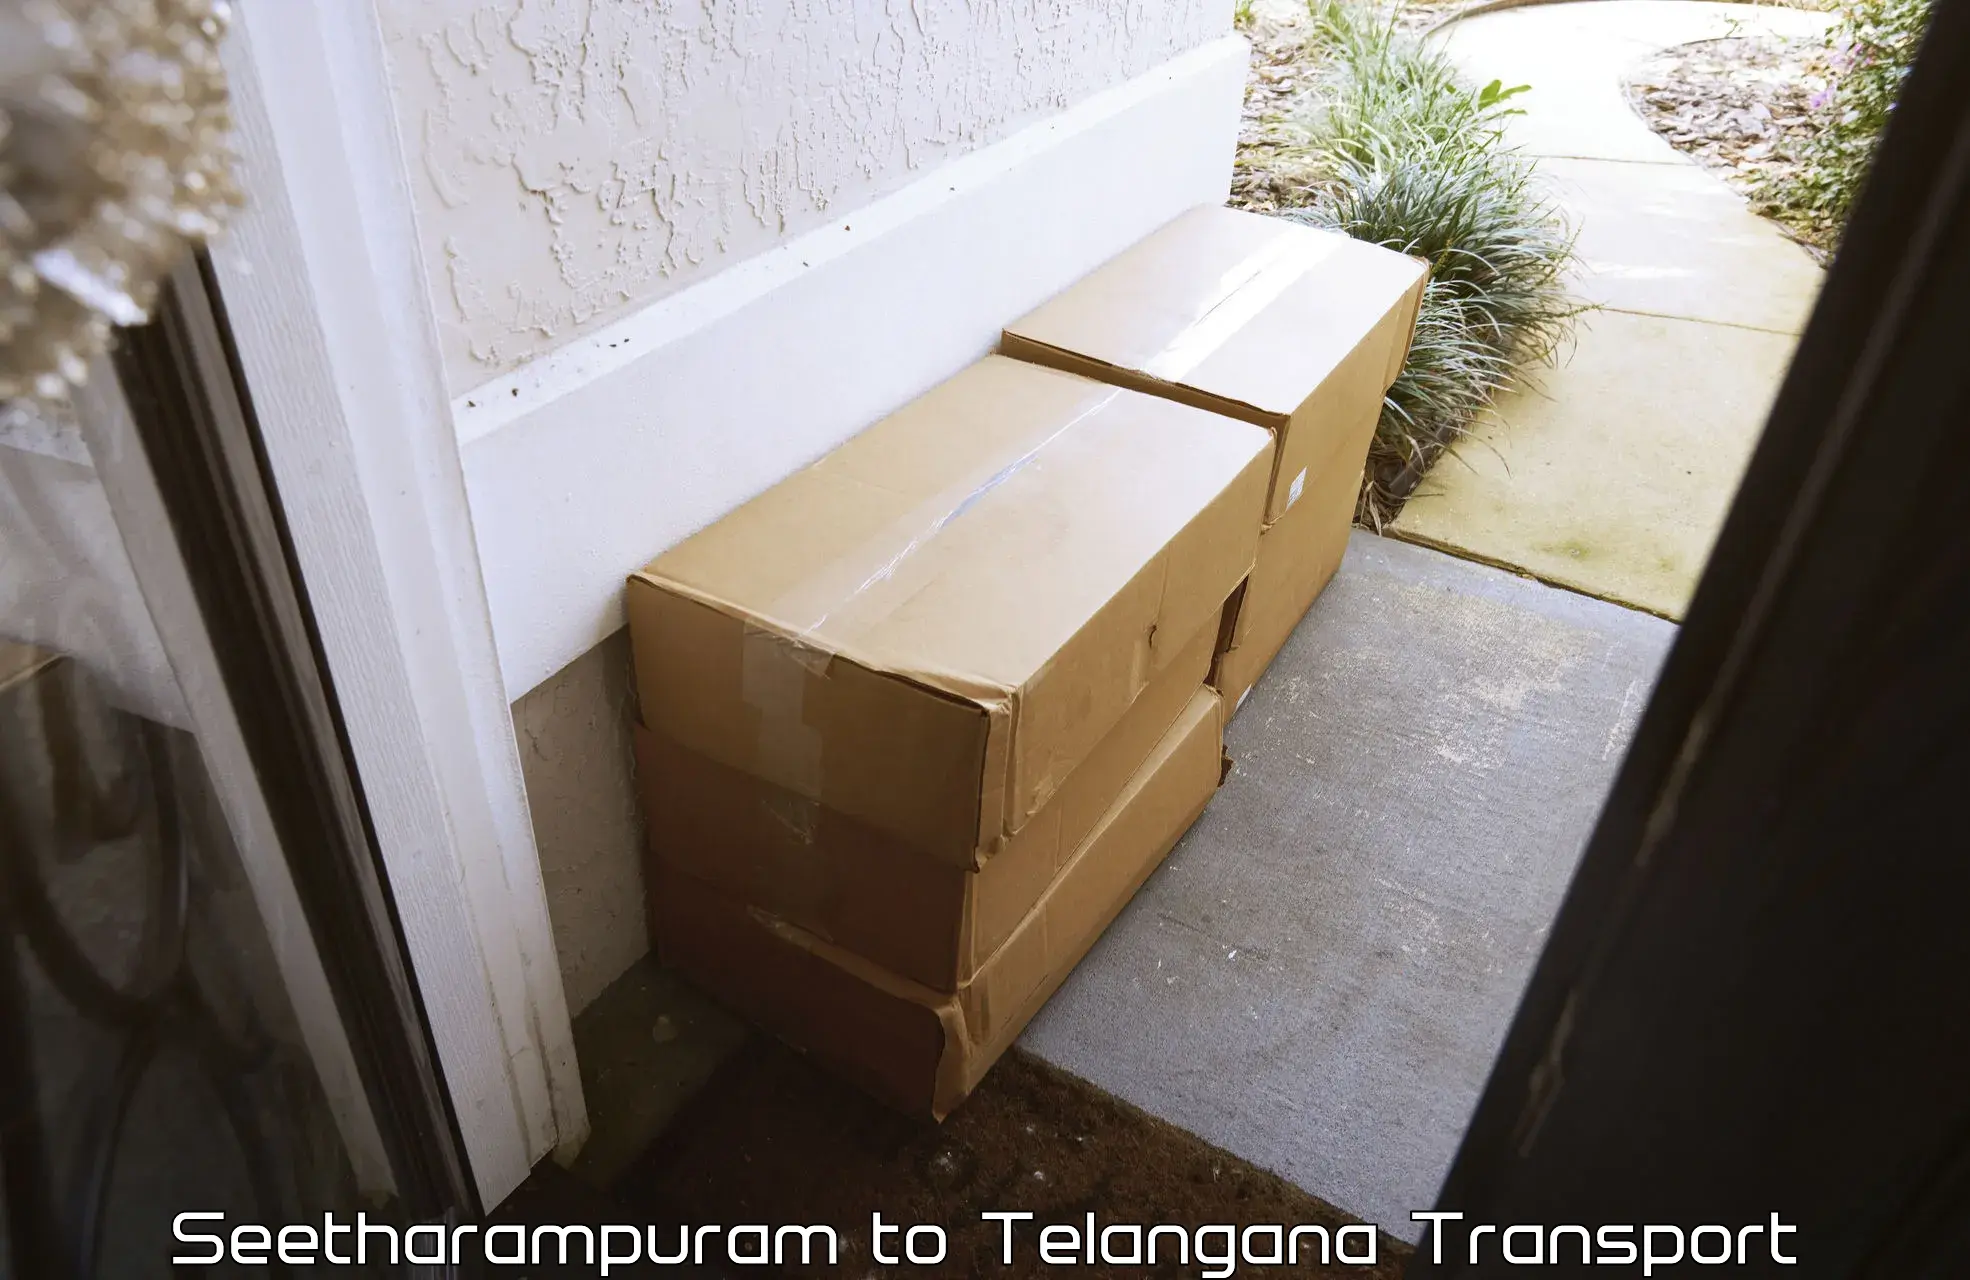 Vehicle transport services Seetharampuram to Yerrupalem